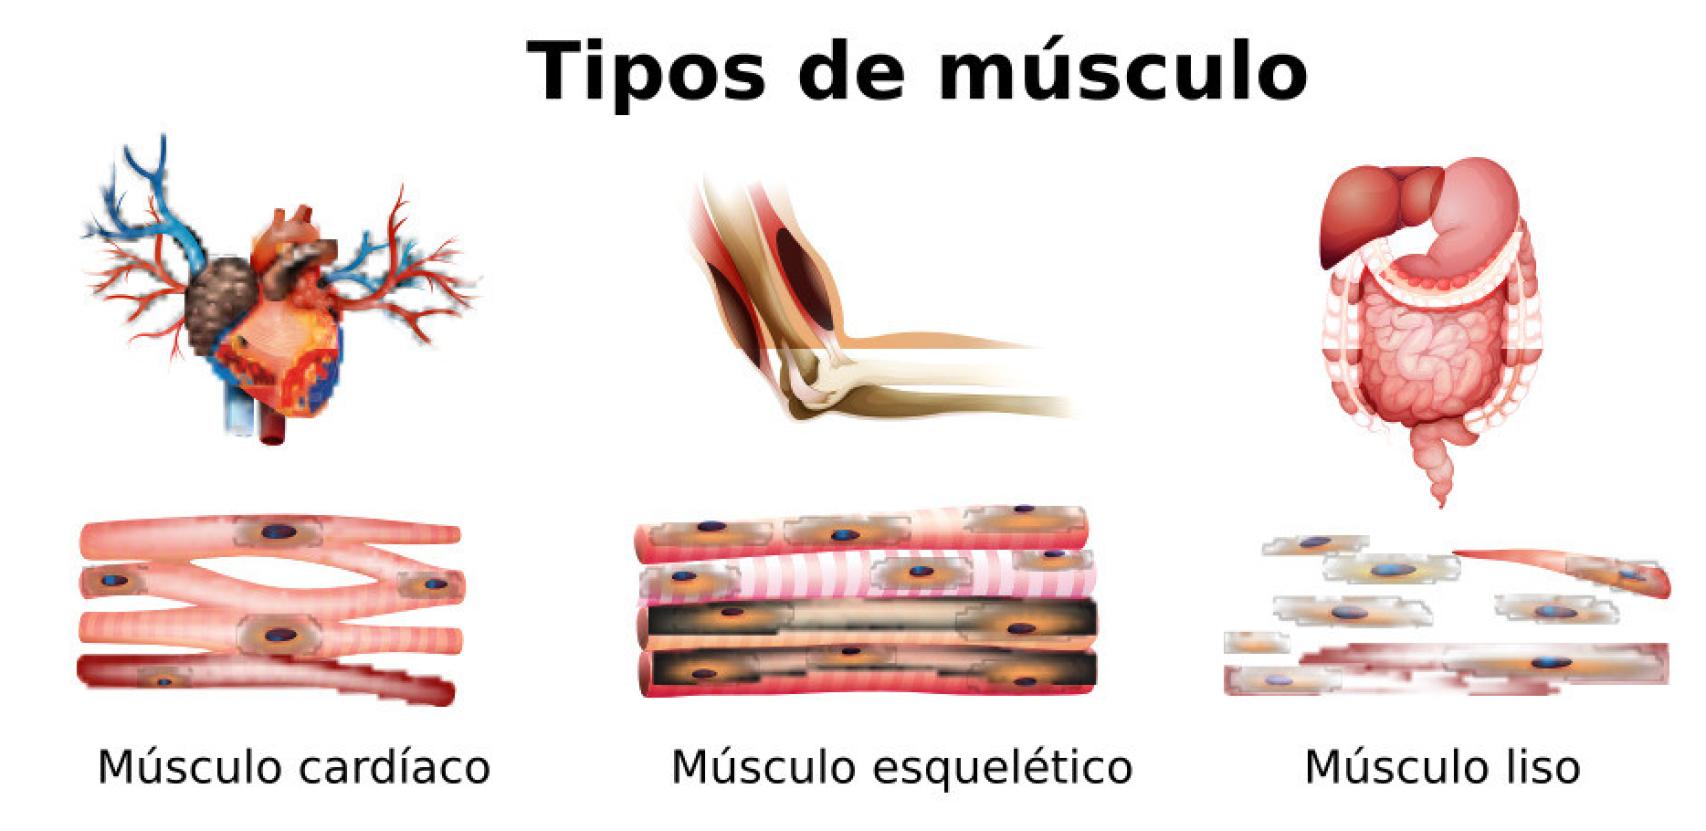 Los tres tipos de músculo